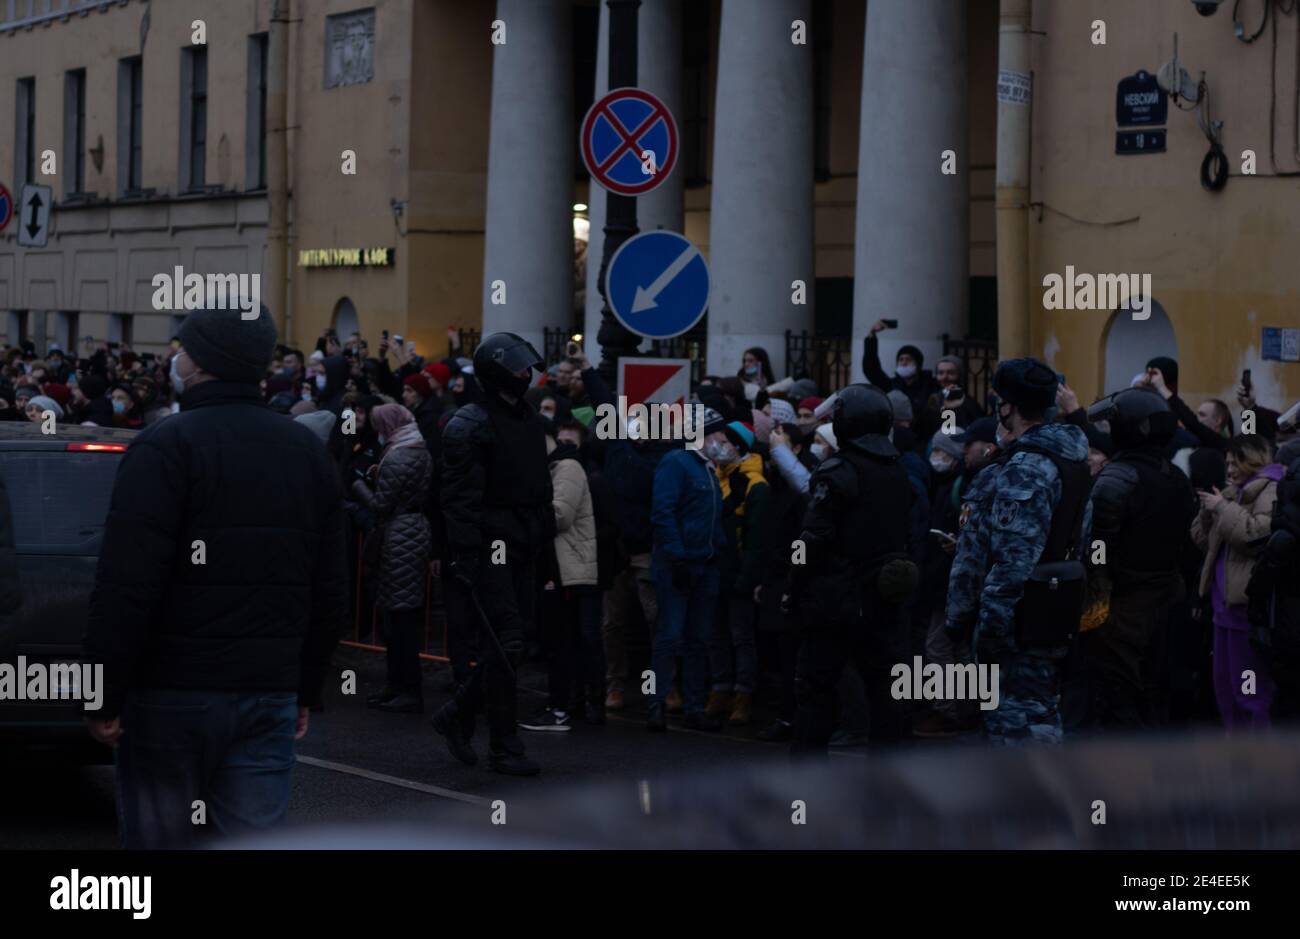 Saint-Pétersbourg, Russie - 23 janvier 2021 : marche de protestation en Russie. La police et les gens dans la rue. Foule de manifestants , éditorial illustratif. Banque D'Images